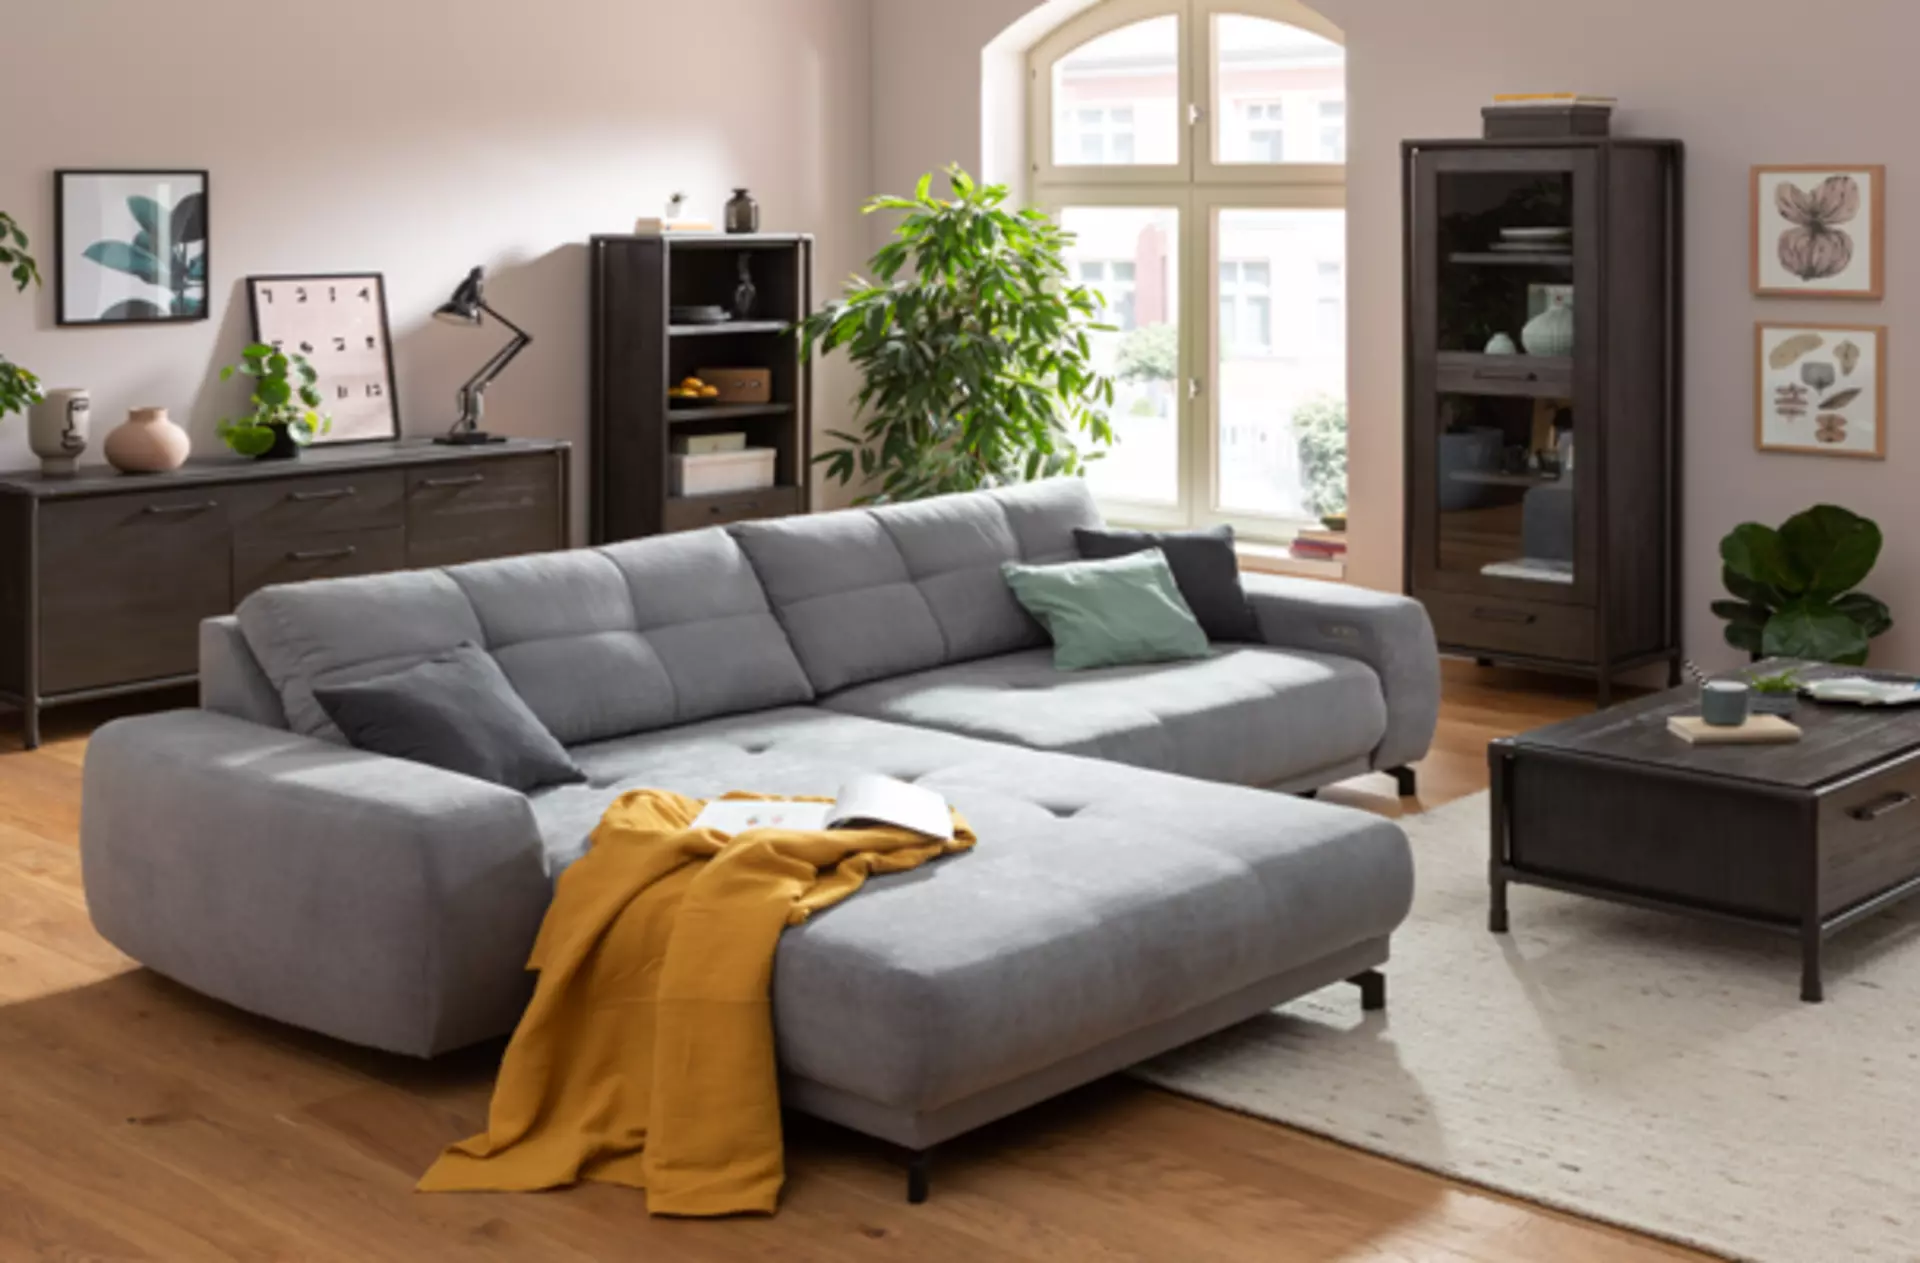 Self, Möbel Inhofer, Sofa, Couch, Wohnen, Wohnzimmer